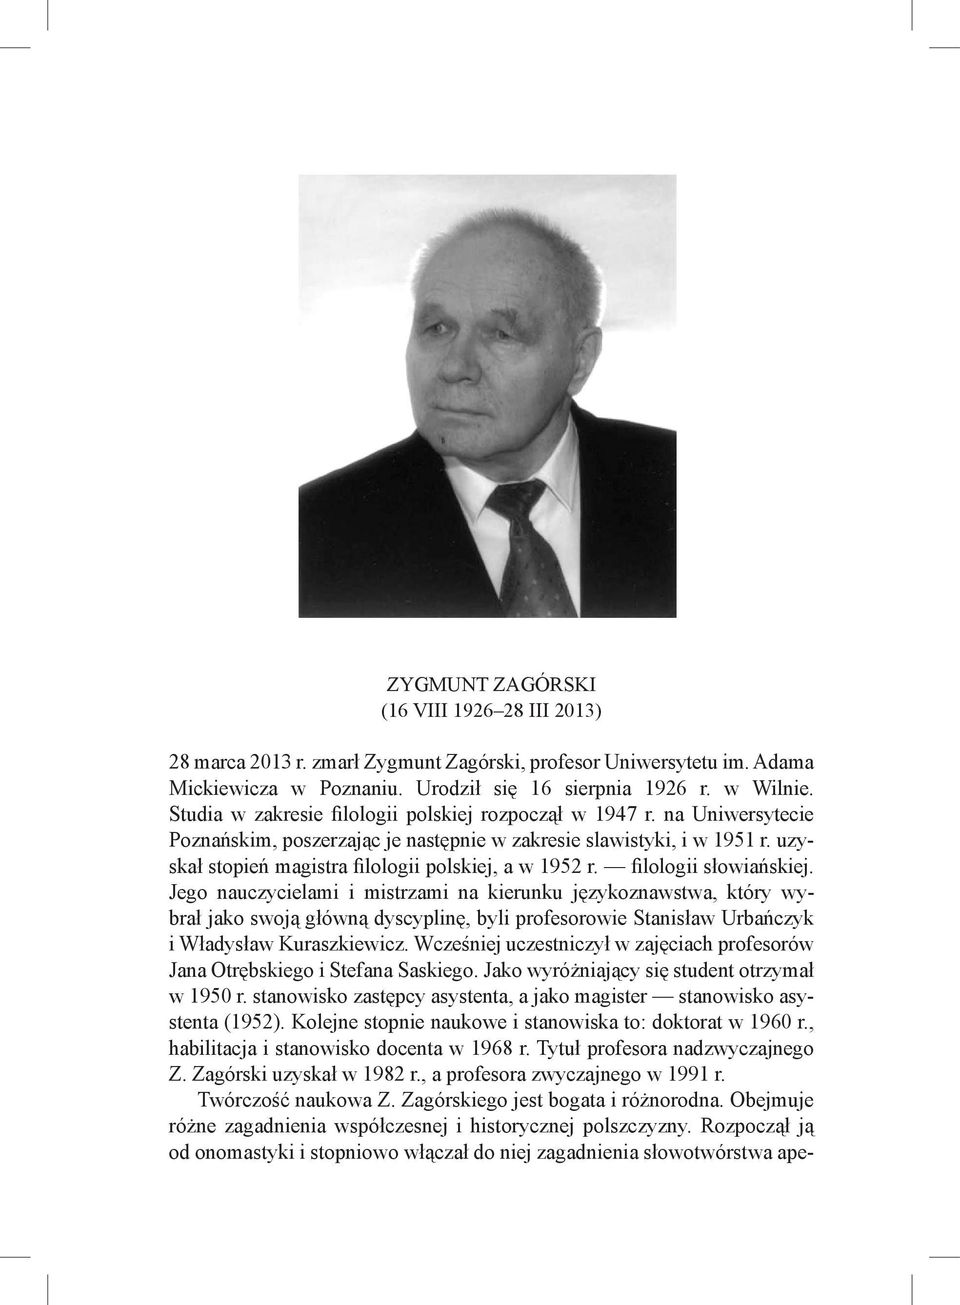 uzyskał stopień magistra filologii polskiej, a w 1952 r. filologii słowiańskiej.